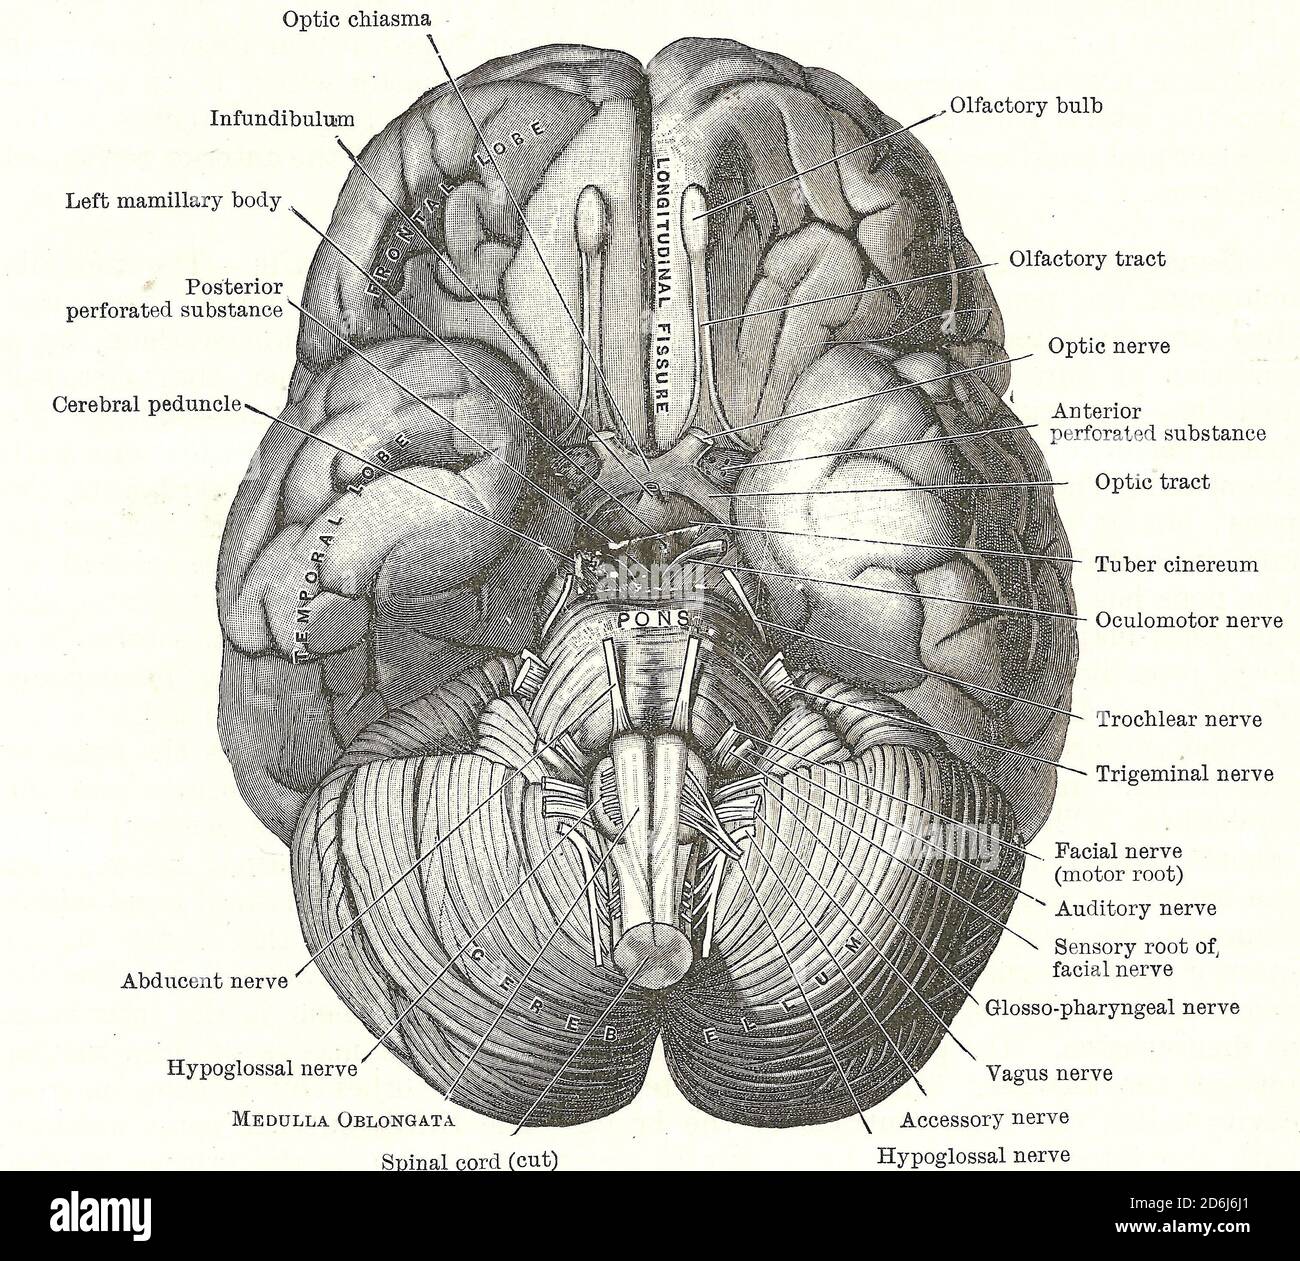 Dissektion des menschlichen Gehirns - Basis des Gehirns und Hirnnerven, aus einem frühen 20. Jahrhundert Anatomie Lehrbuch, aus dem Urheberrecht Stockfoto